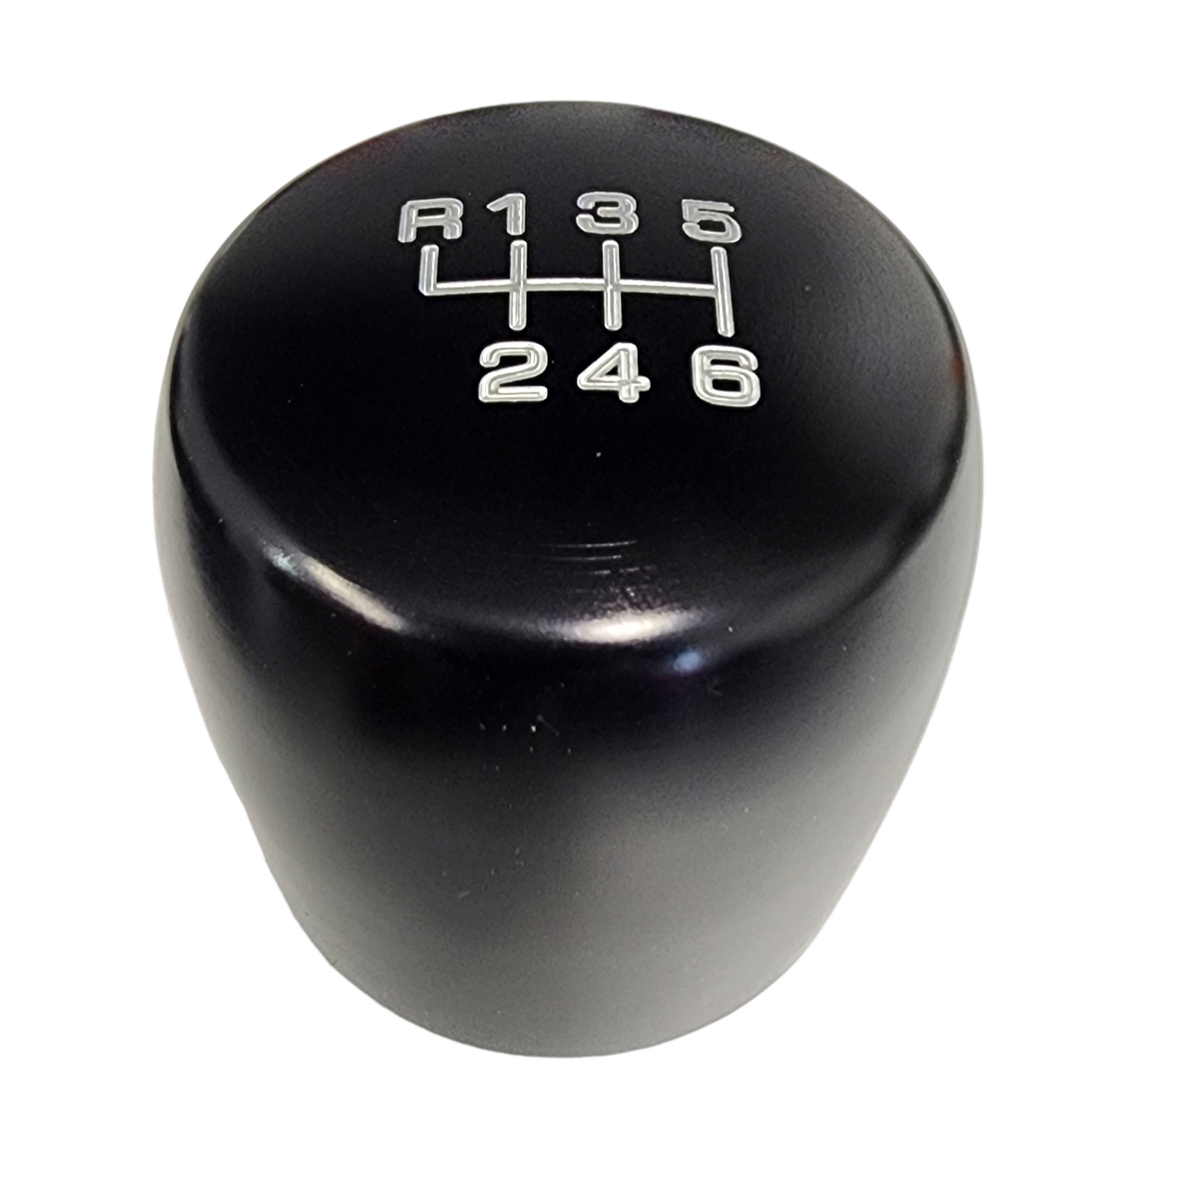 Black XB200 Cylinder Style Aluminum Shift Knob